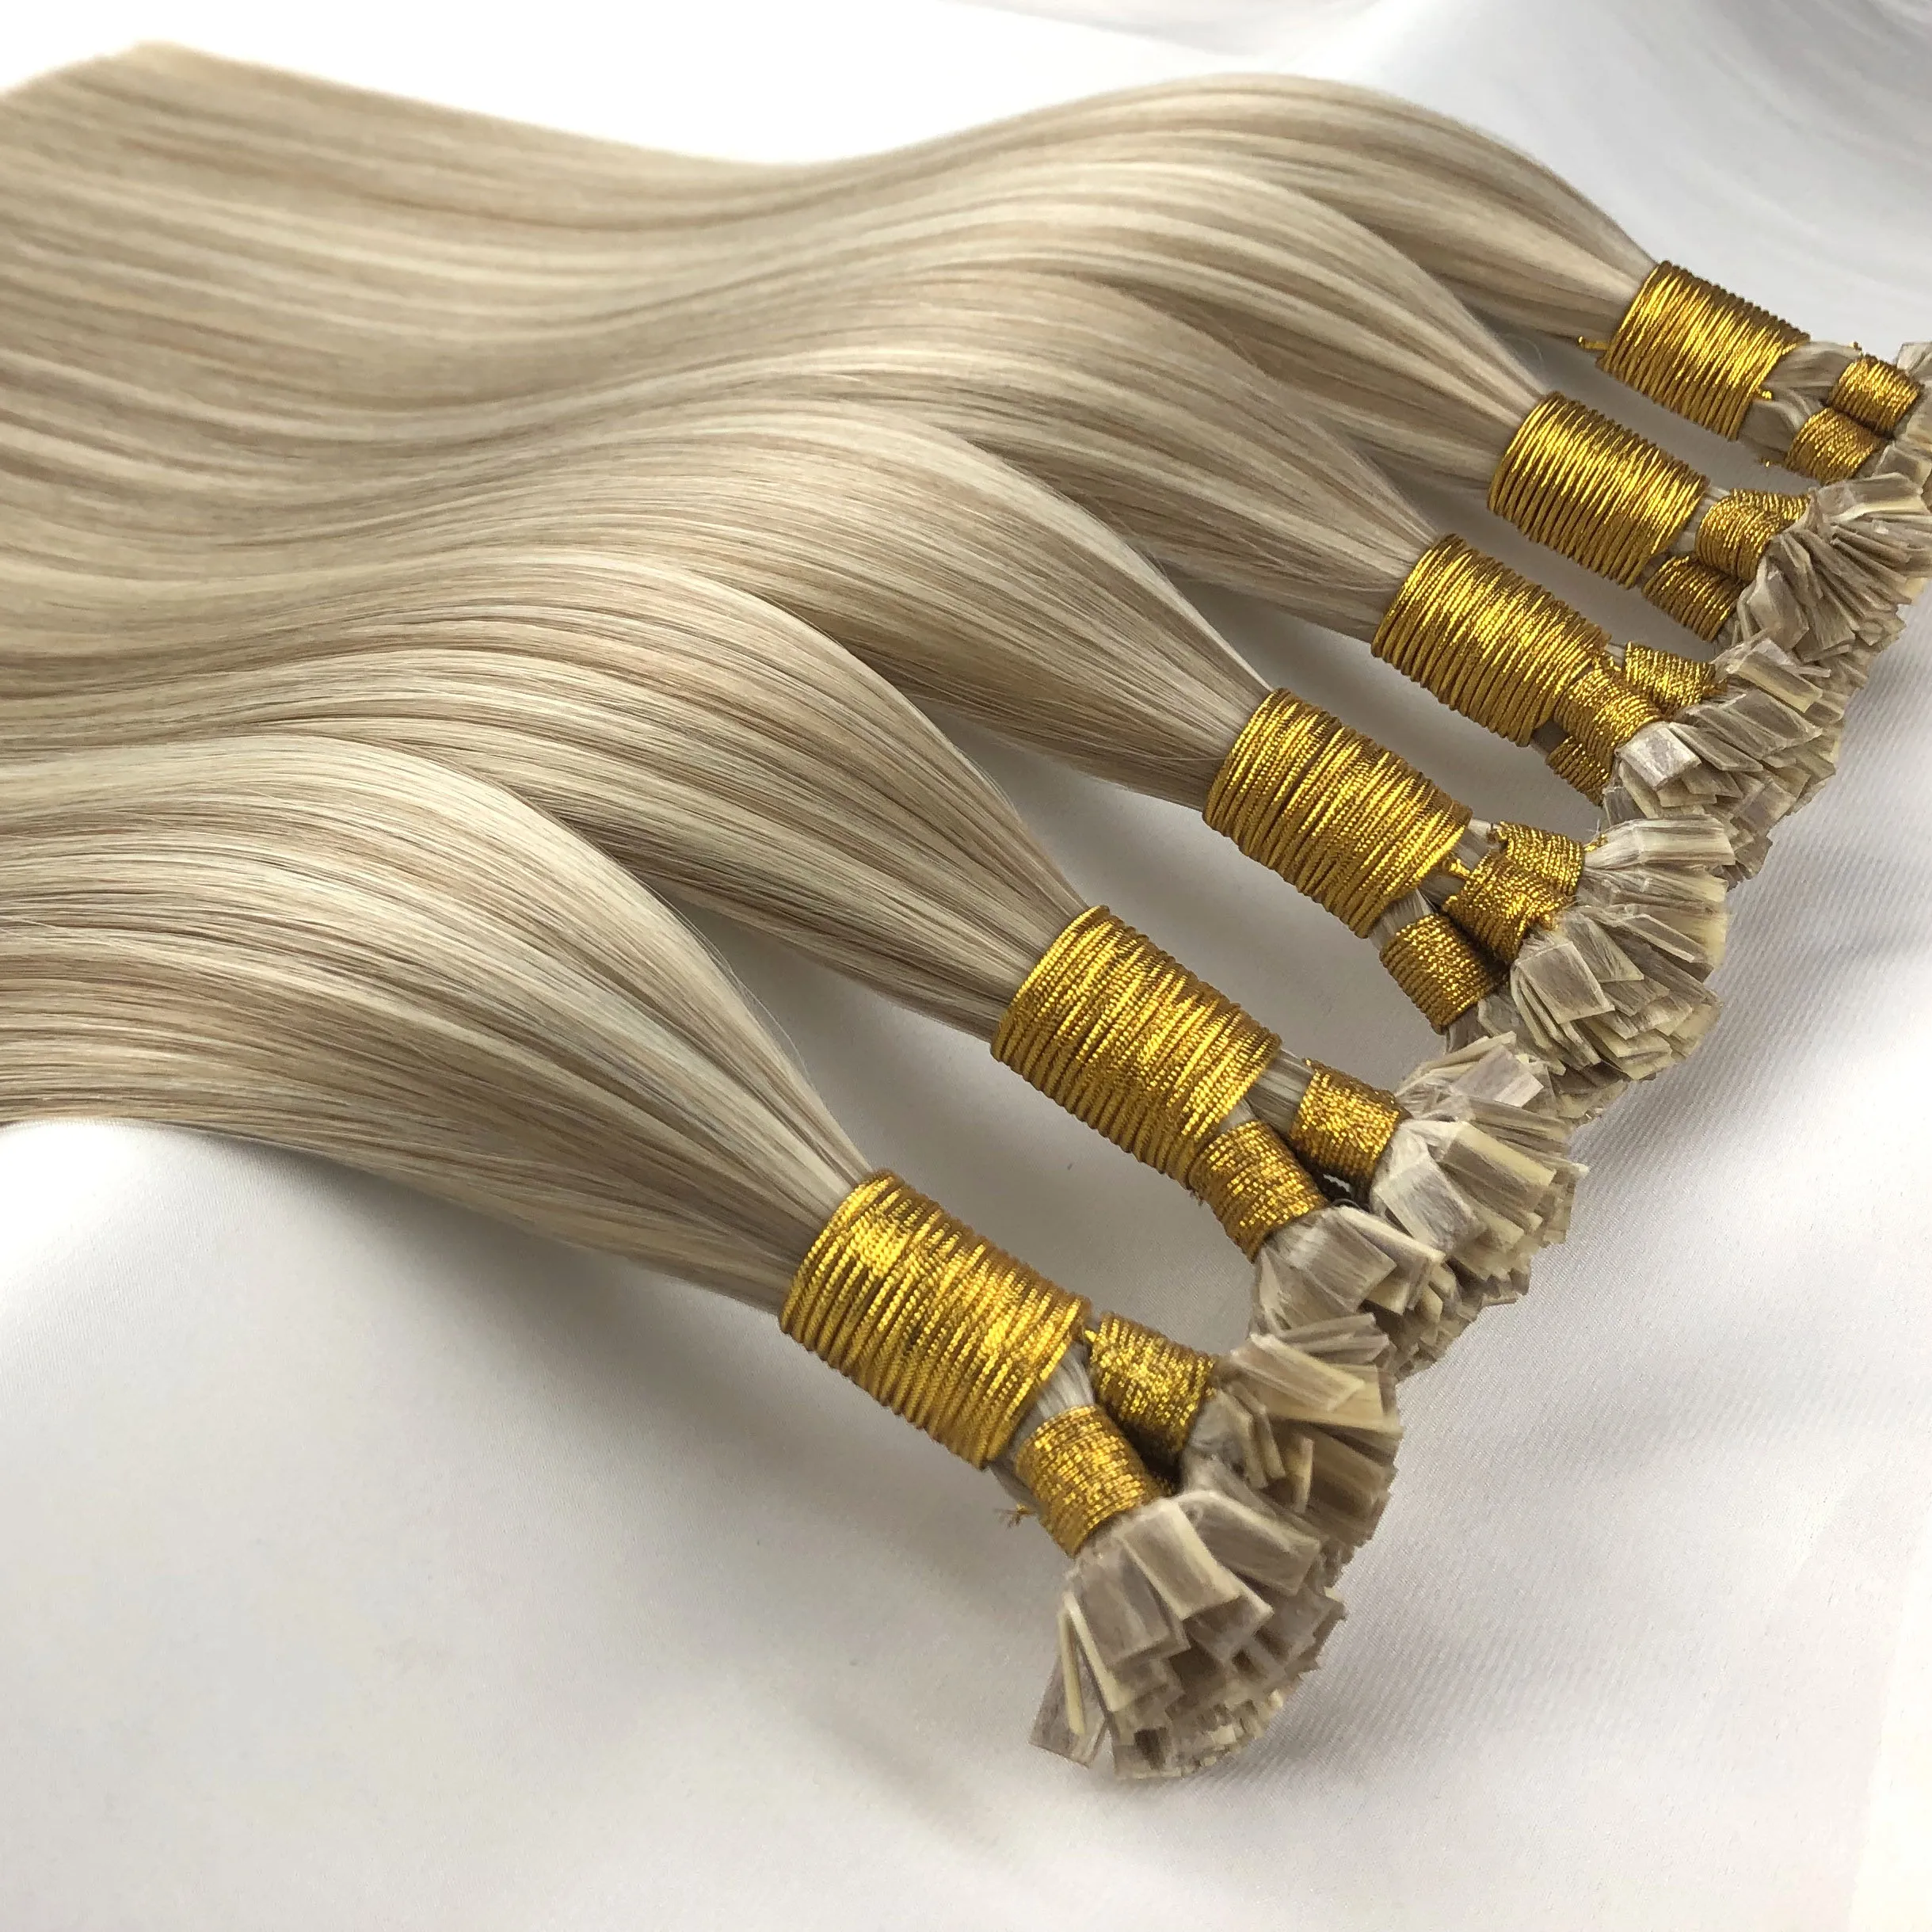 סיטונאי מחיר שונה סוגים לאורך זמן כפול נמשך קרטין קצה שטוח שיער תוספות שיער טבעי